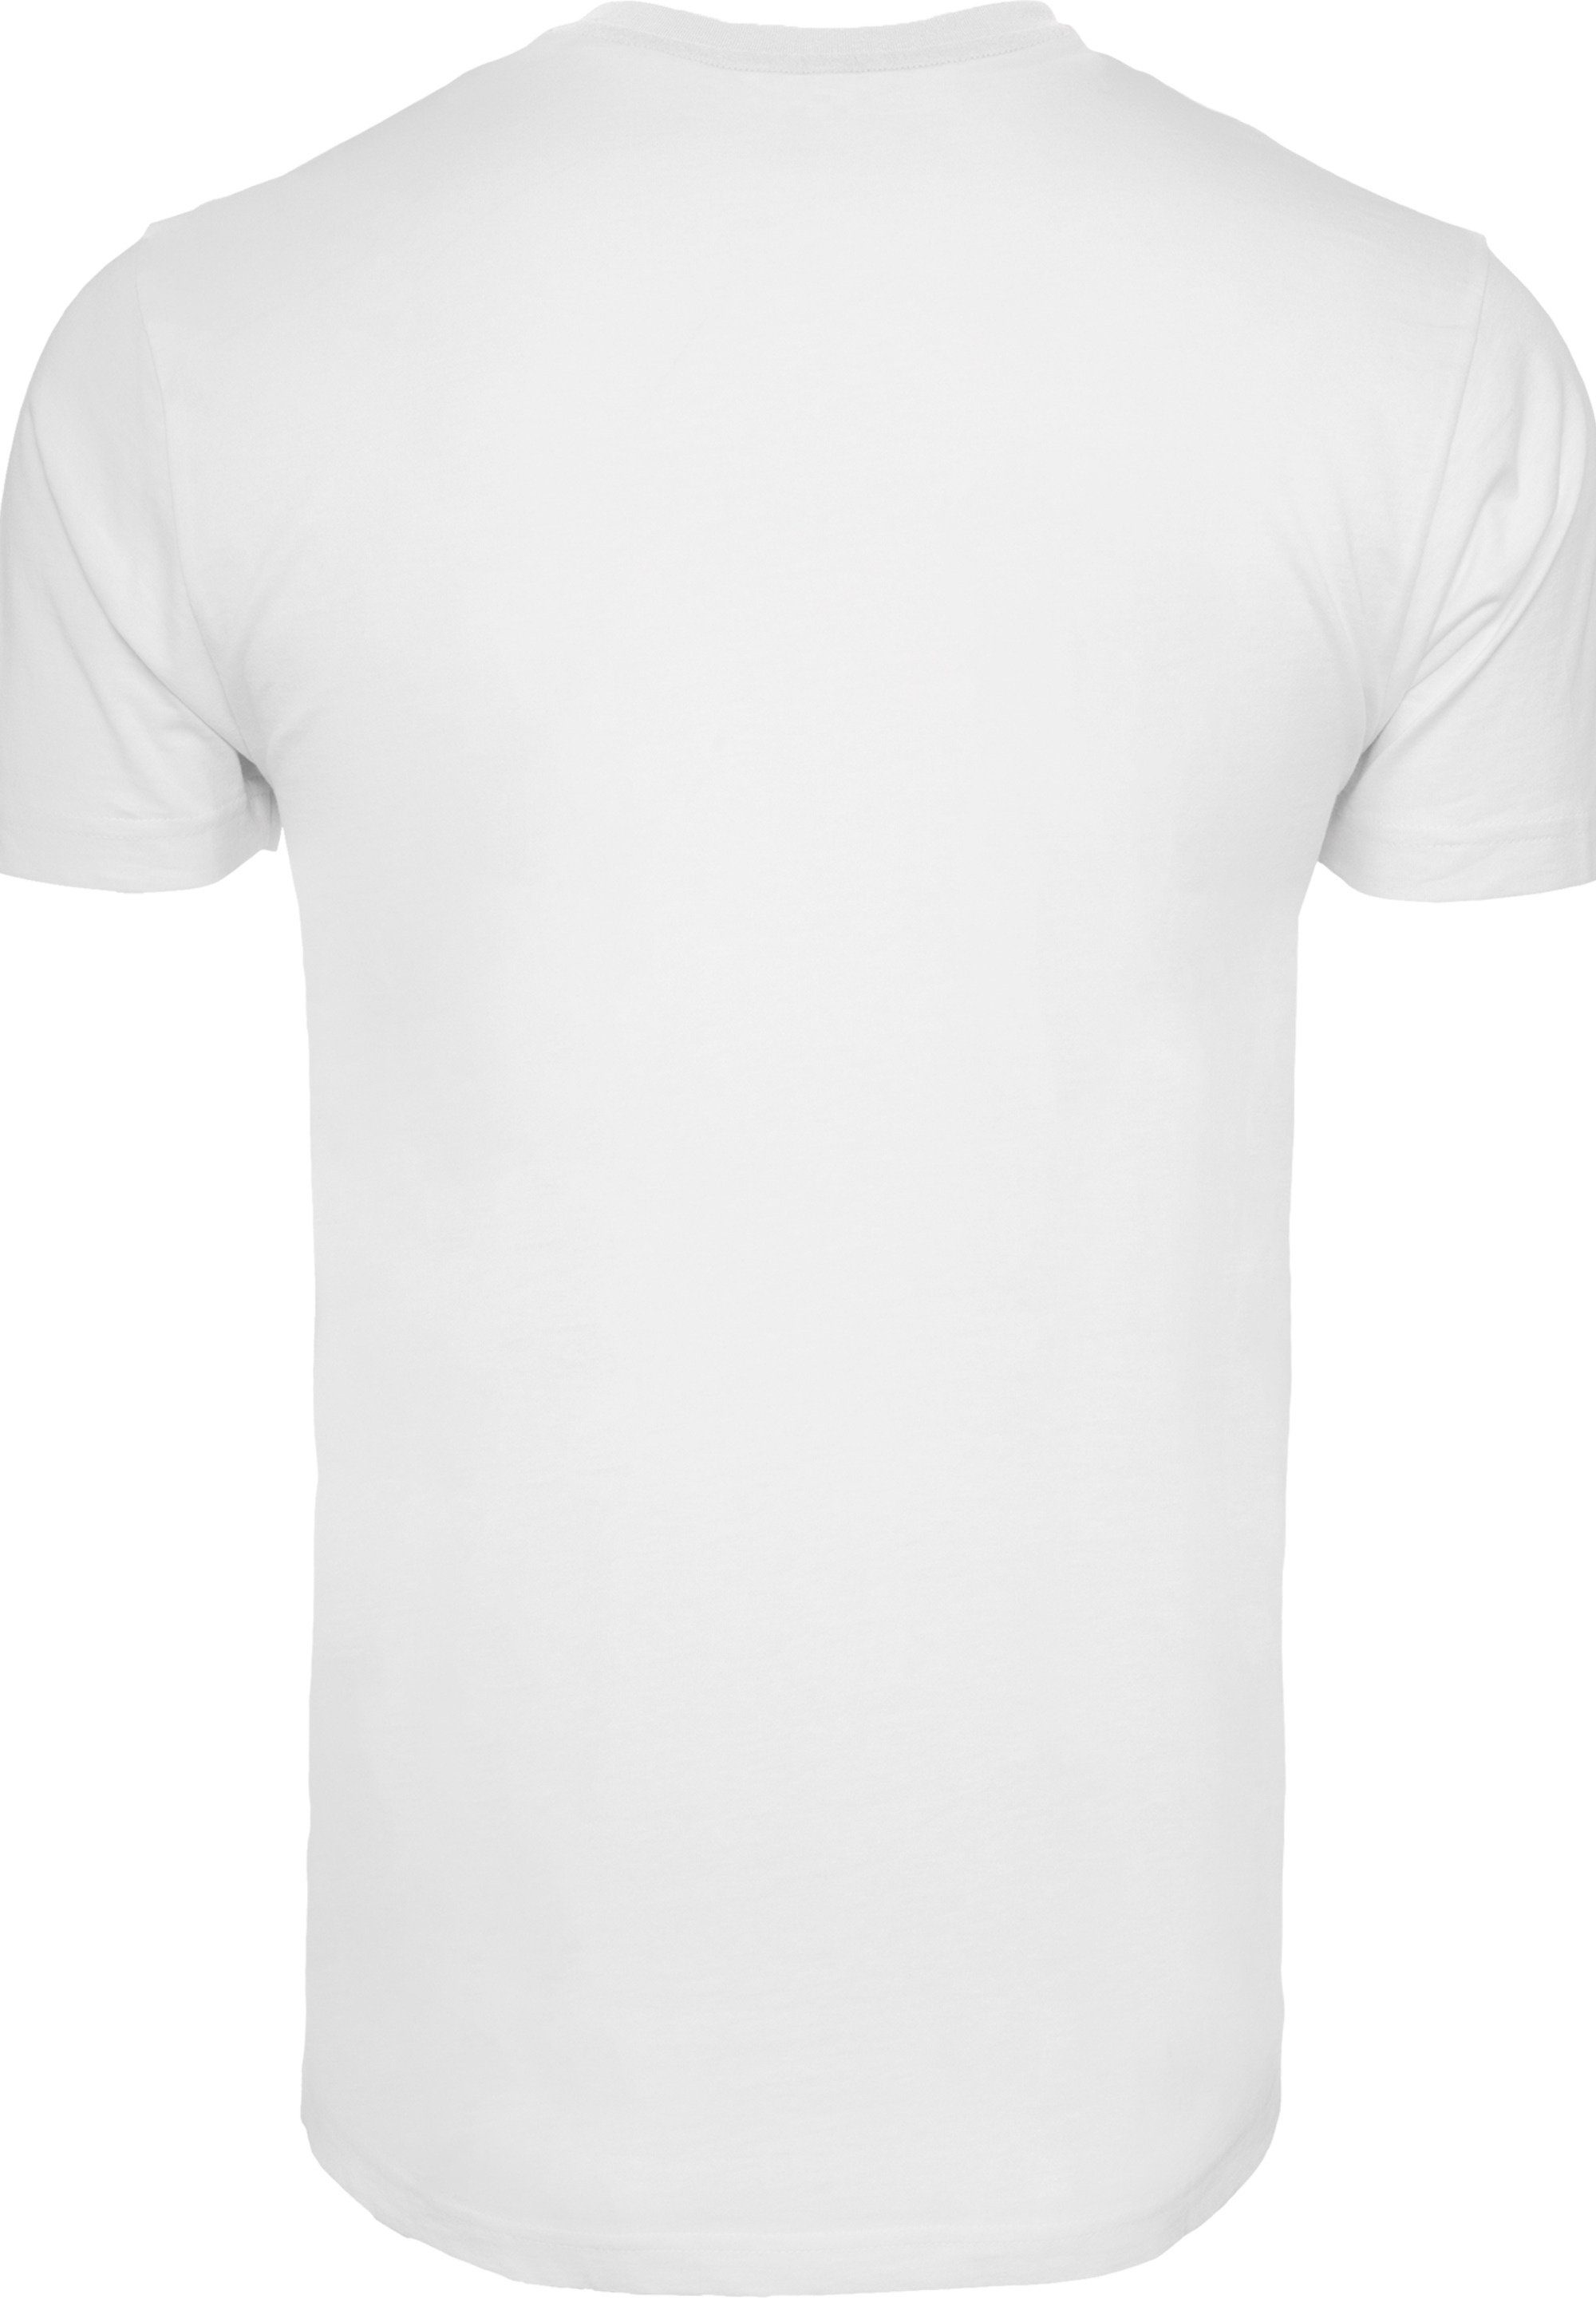 F4NT4STIC T-Shirt weiß Bowie David Logo Herren,Premium Merch,Regular-Fit,Basic,Bandshirt